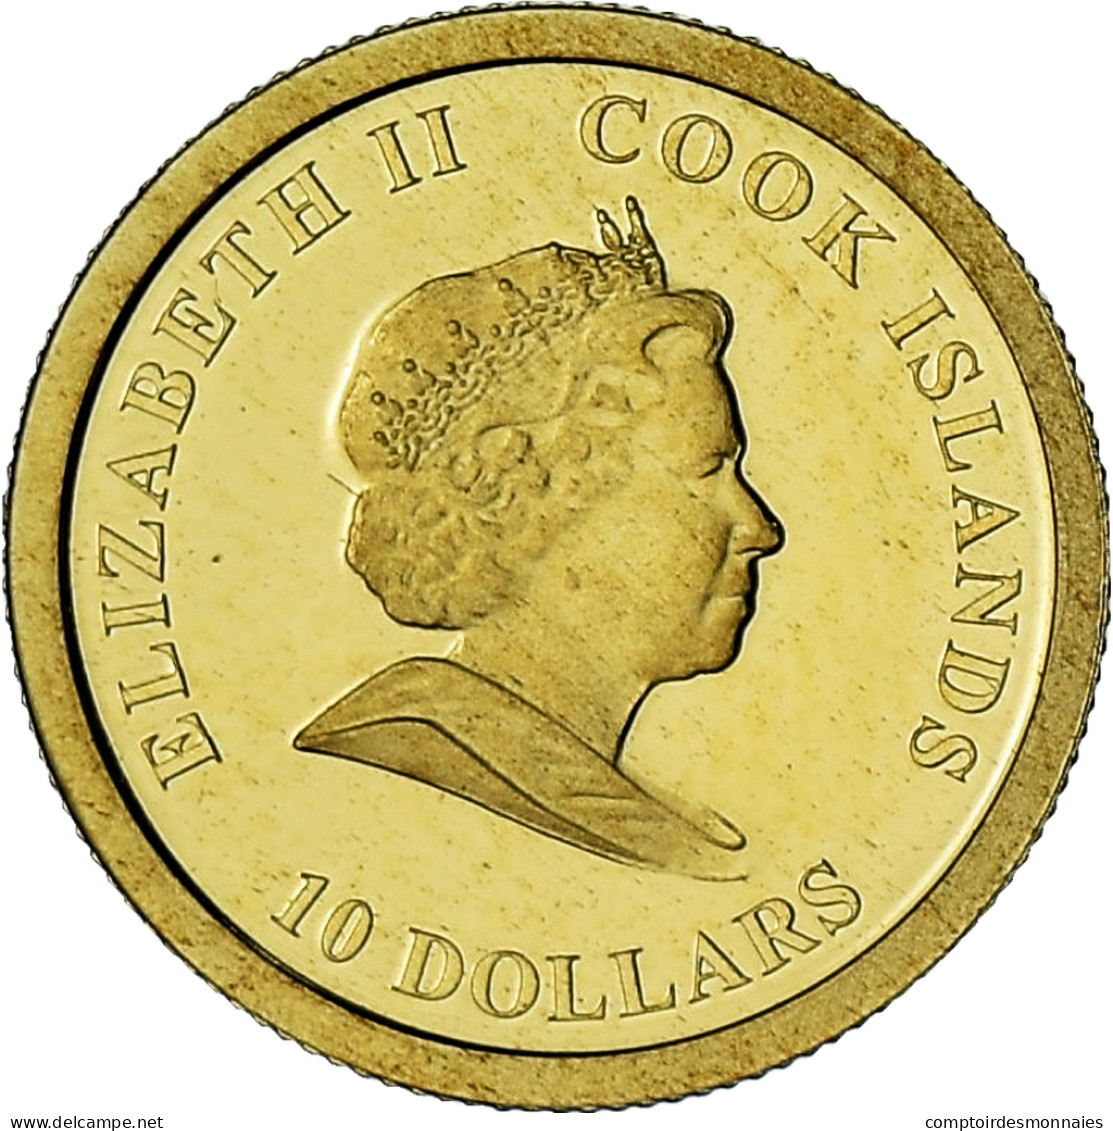 Îles Cook, Elizabeth II, James Cook, 10 Dollars, 2008, BE, FDC, Or - Cookinseln